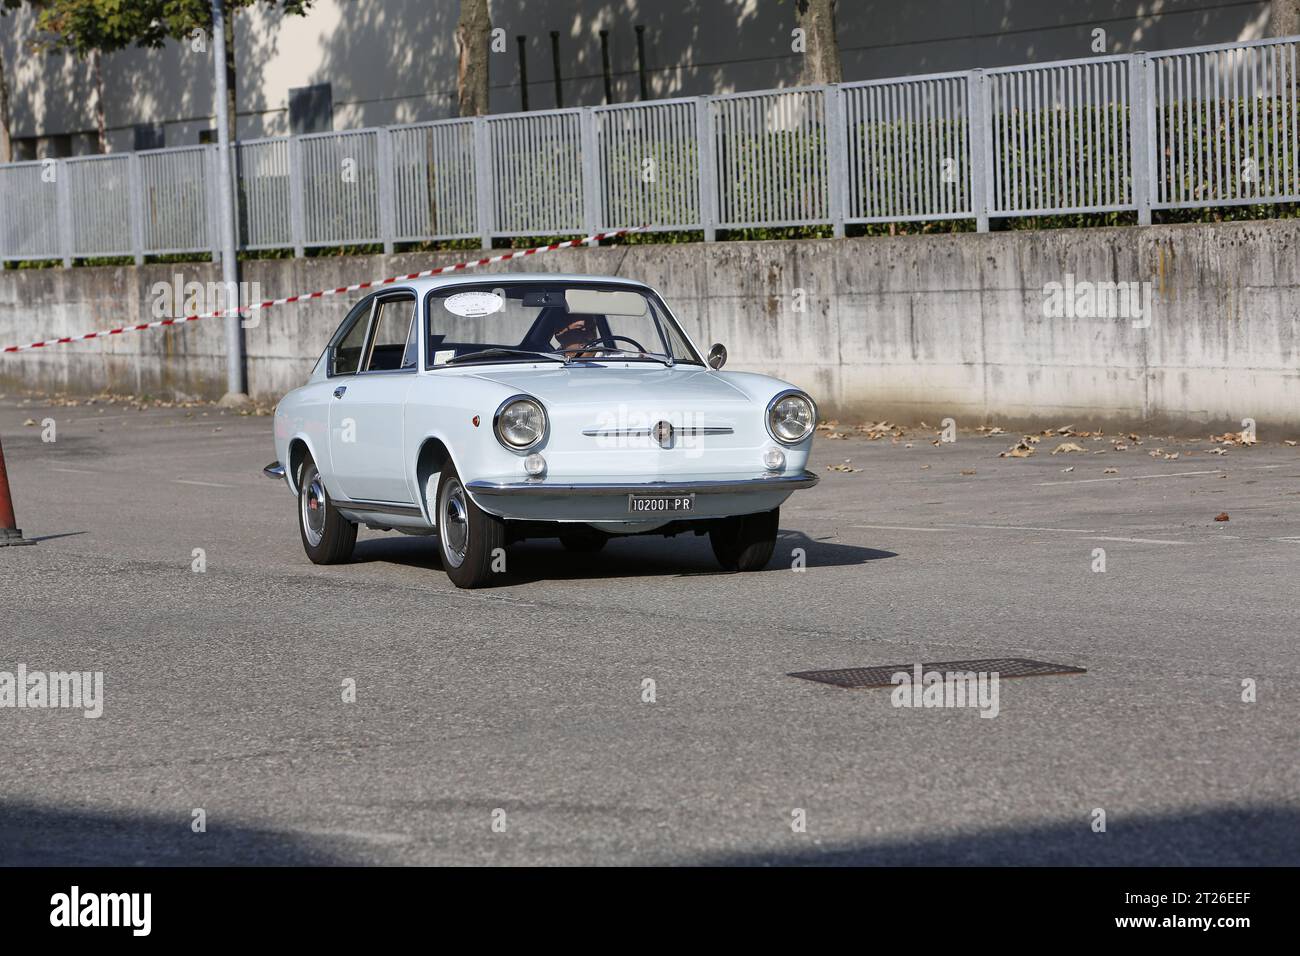 Bibbiano-Reggio Emilia Italie - 07 15 2015 : Rallye gratuit de voitures anciennes sur la place de la ville Fiat 850 coupé. Photo de haute qualité Banque D'Images